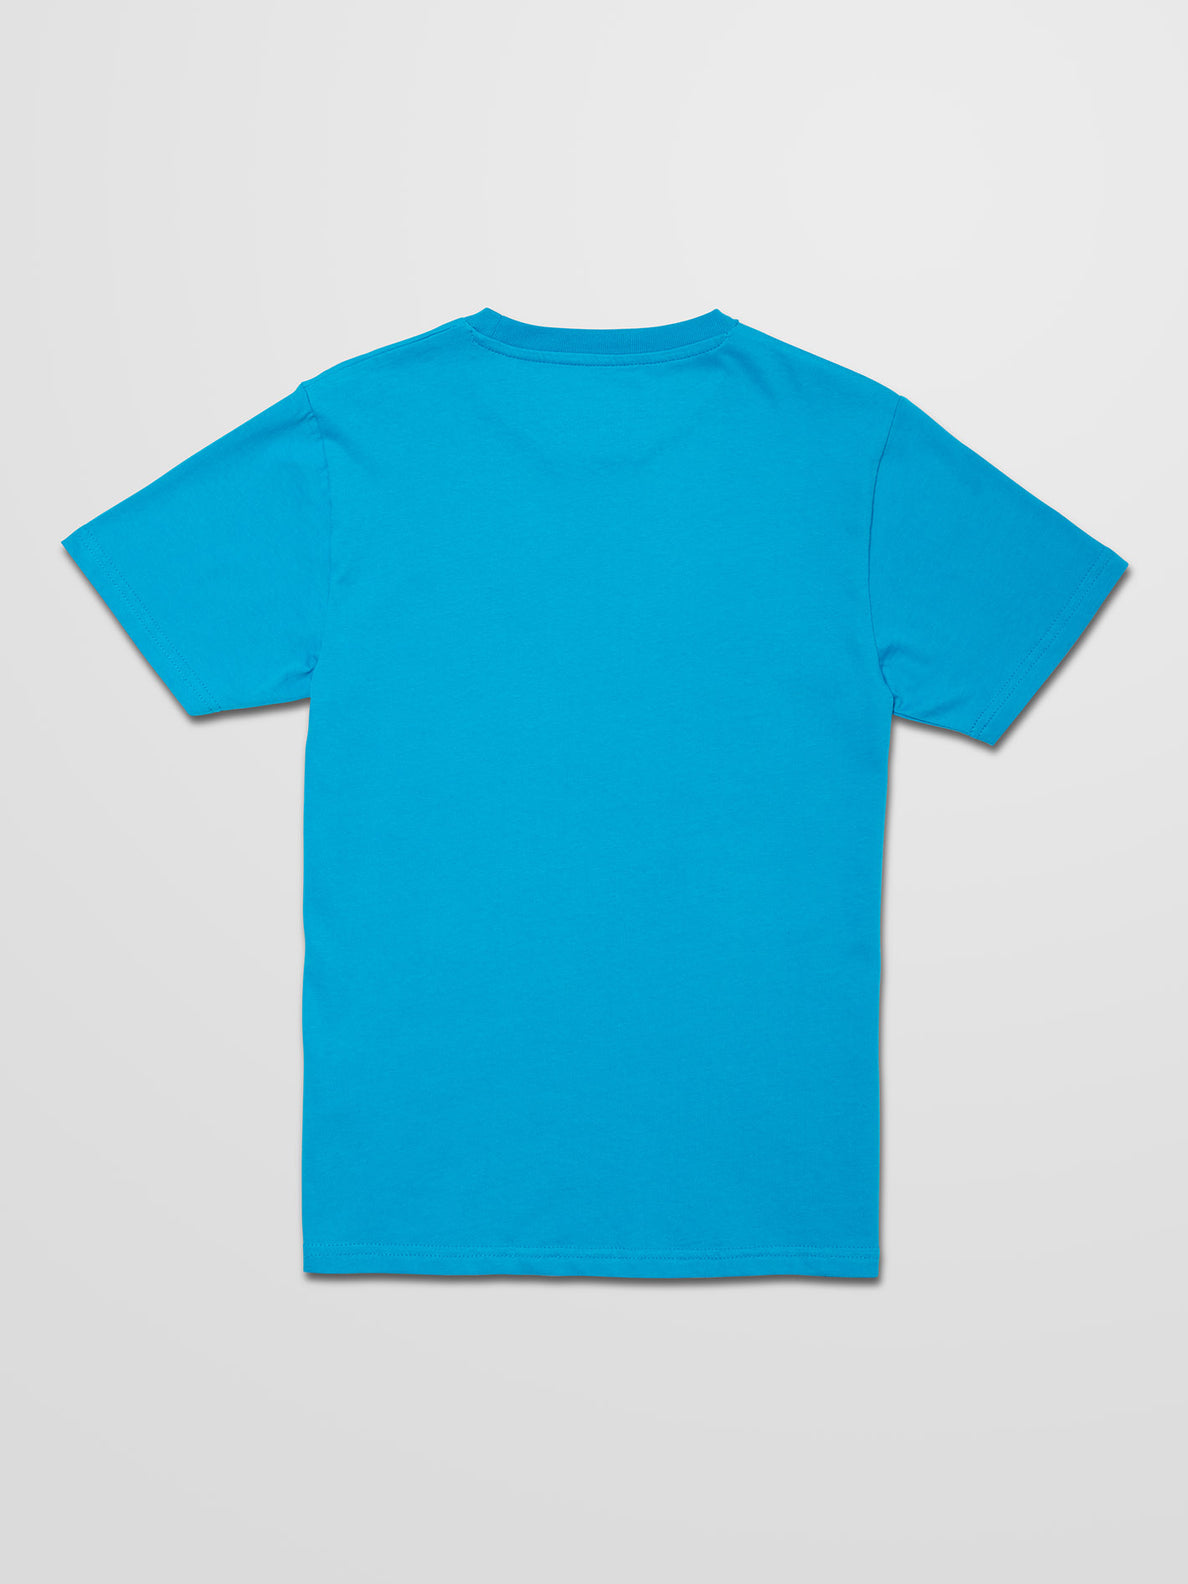 Ufoh T-shirt - BARRIER REEF - (BOYS) (C3532111_BAF) [B]